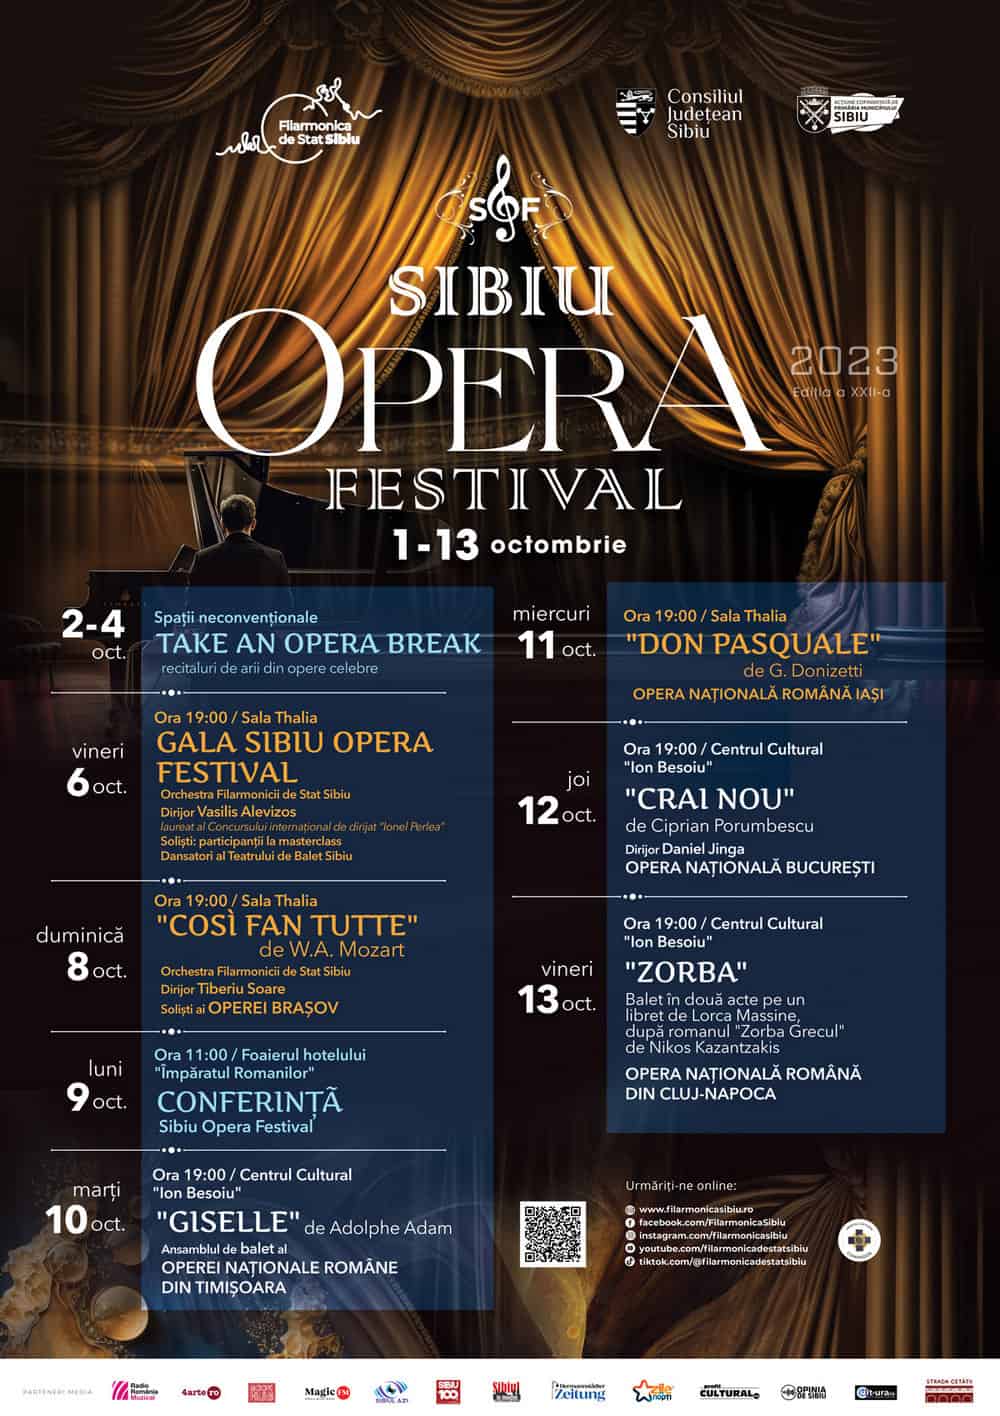 bilete la preț promoțional pentru sibiu opera festival. ofertă valabilă până la 1 octombrie